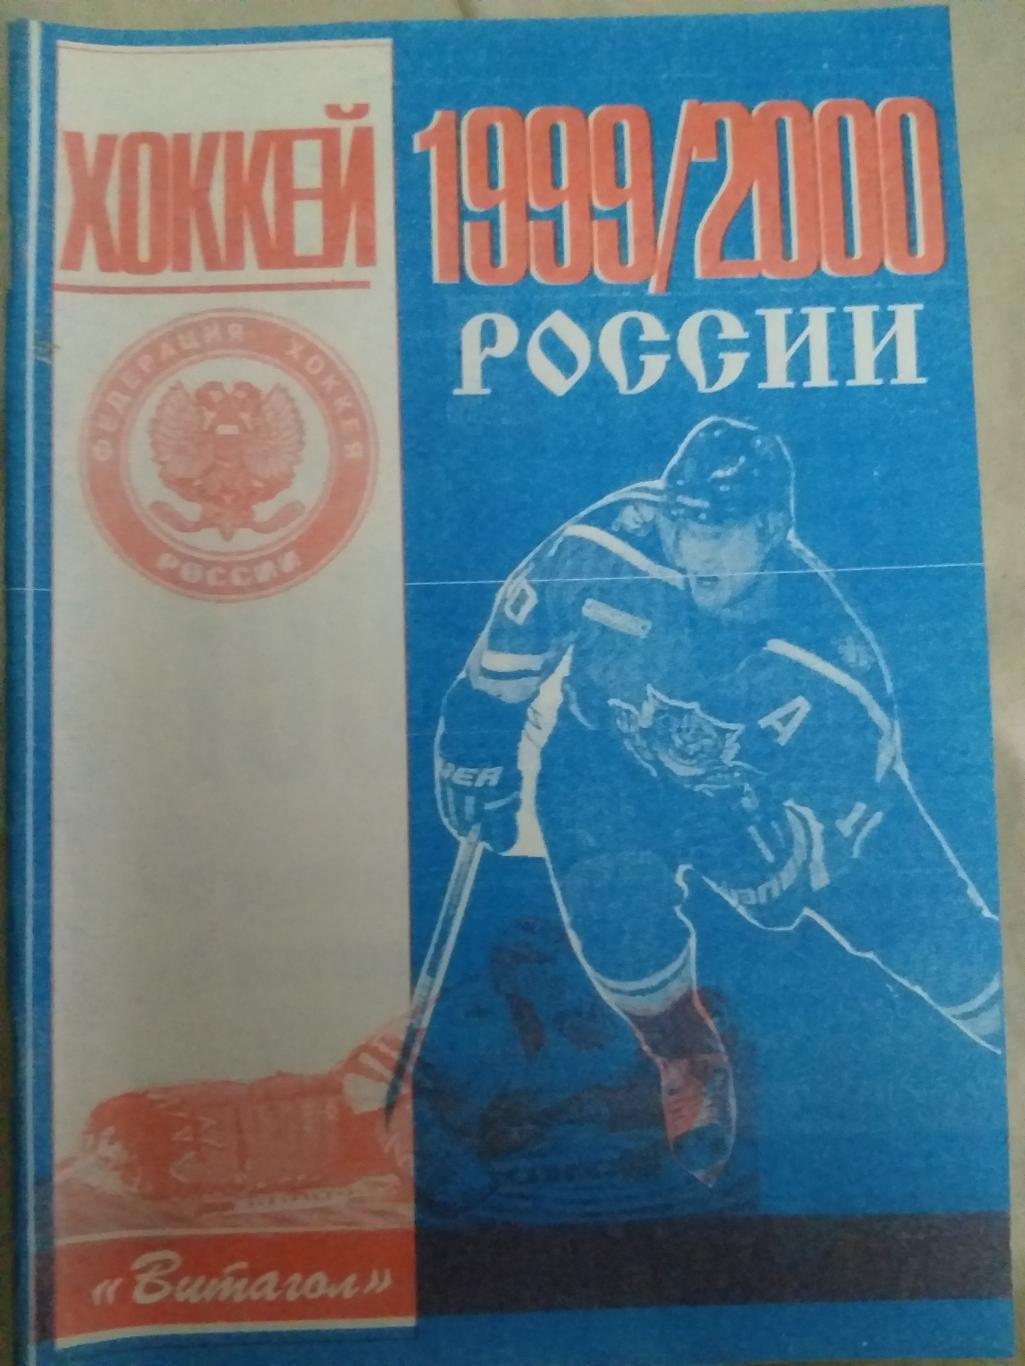 Справочник Хоккей России 1999/2000 Санкт-Петербург